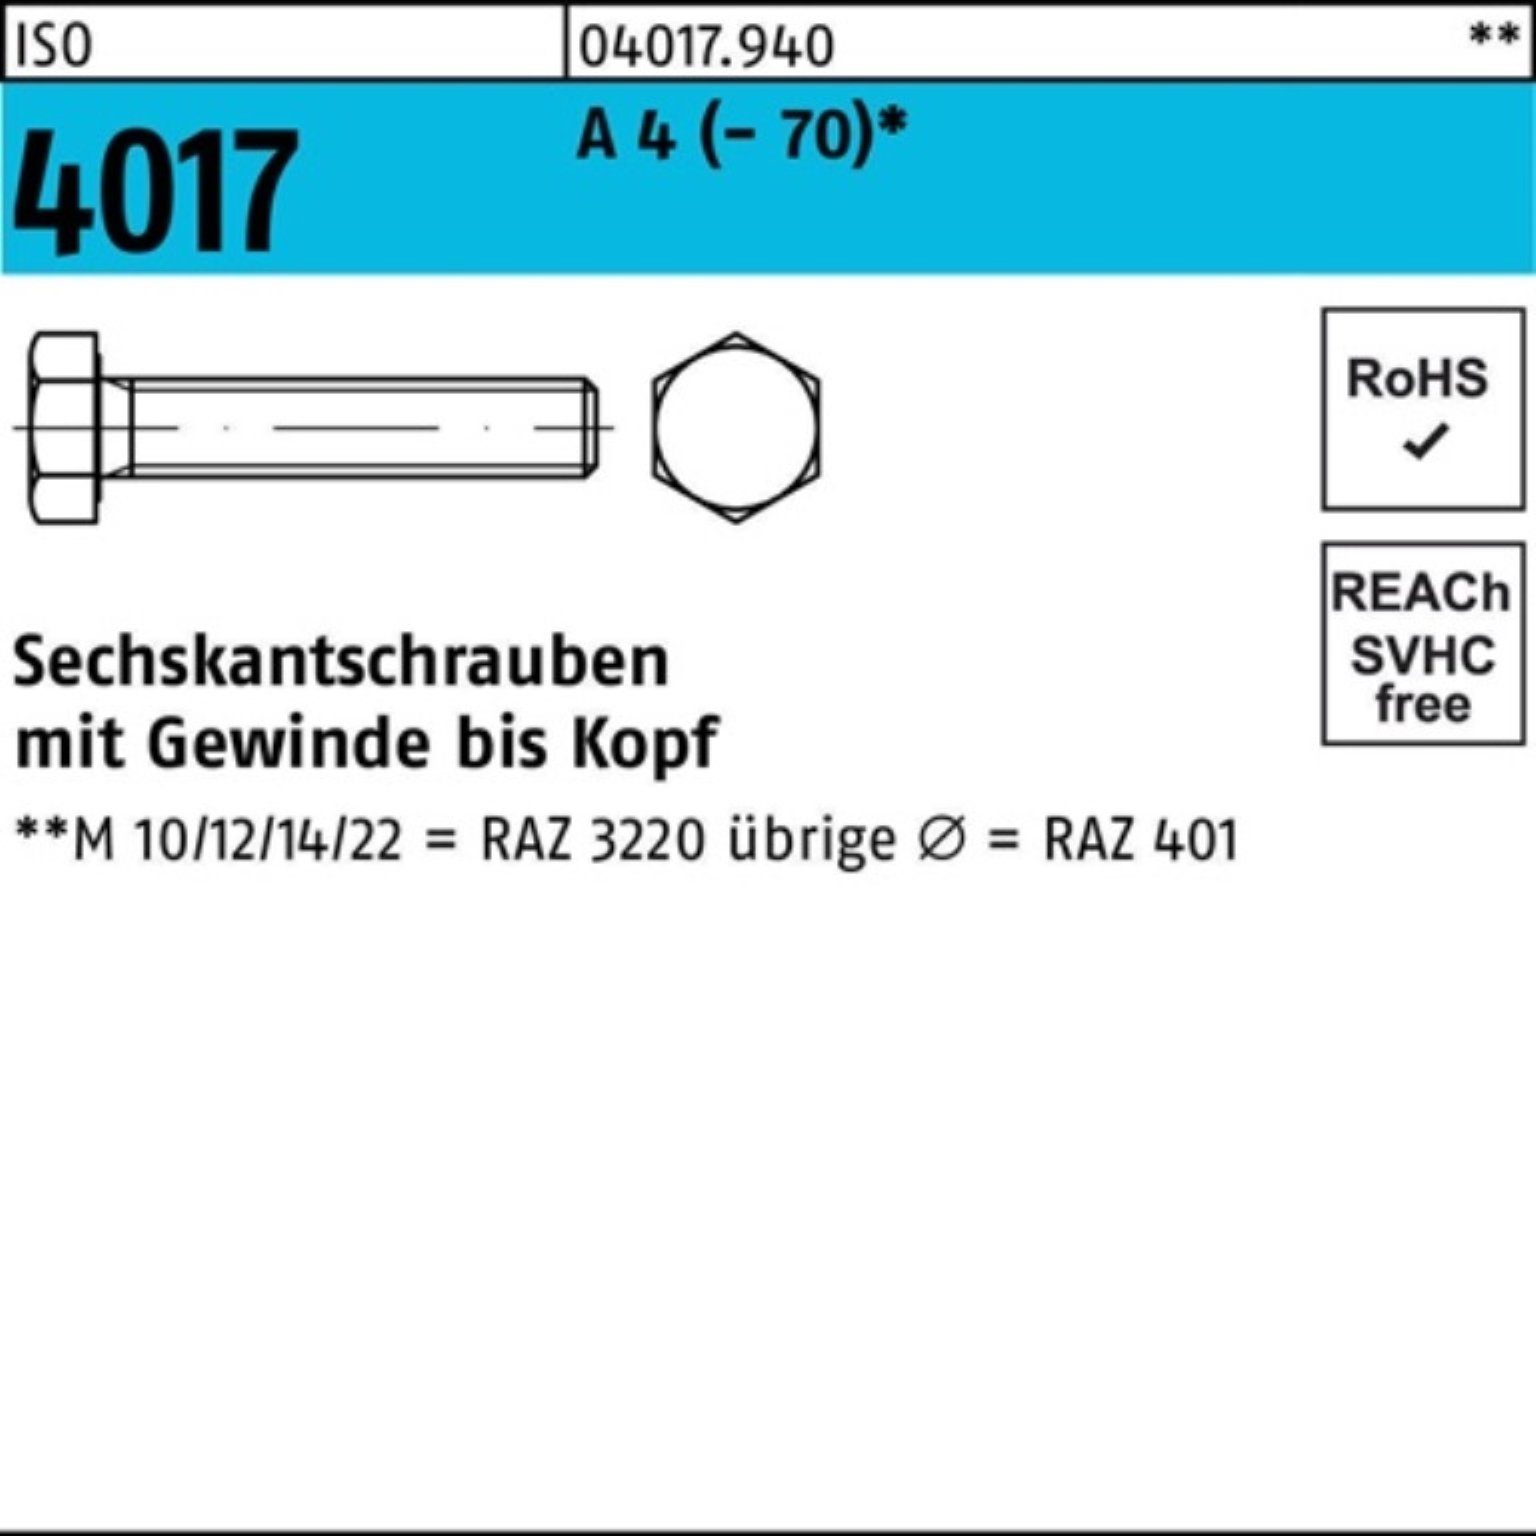 Bufab Sechskantschraube 200er Pack Sechskantschraube ISO 4017 VG M8x 25 A 4 (70) 200 Stück